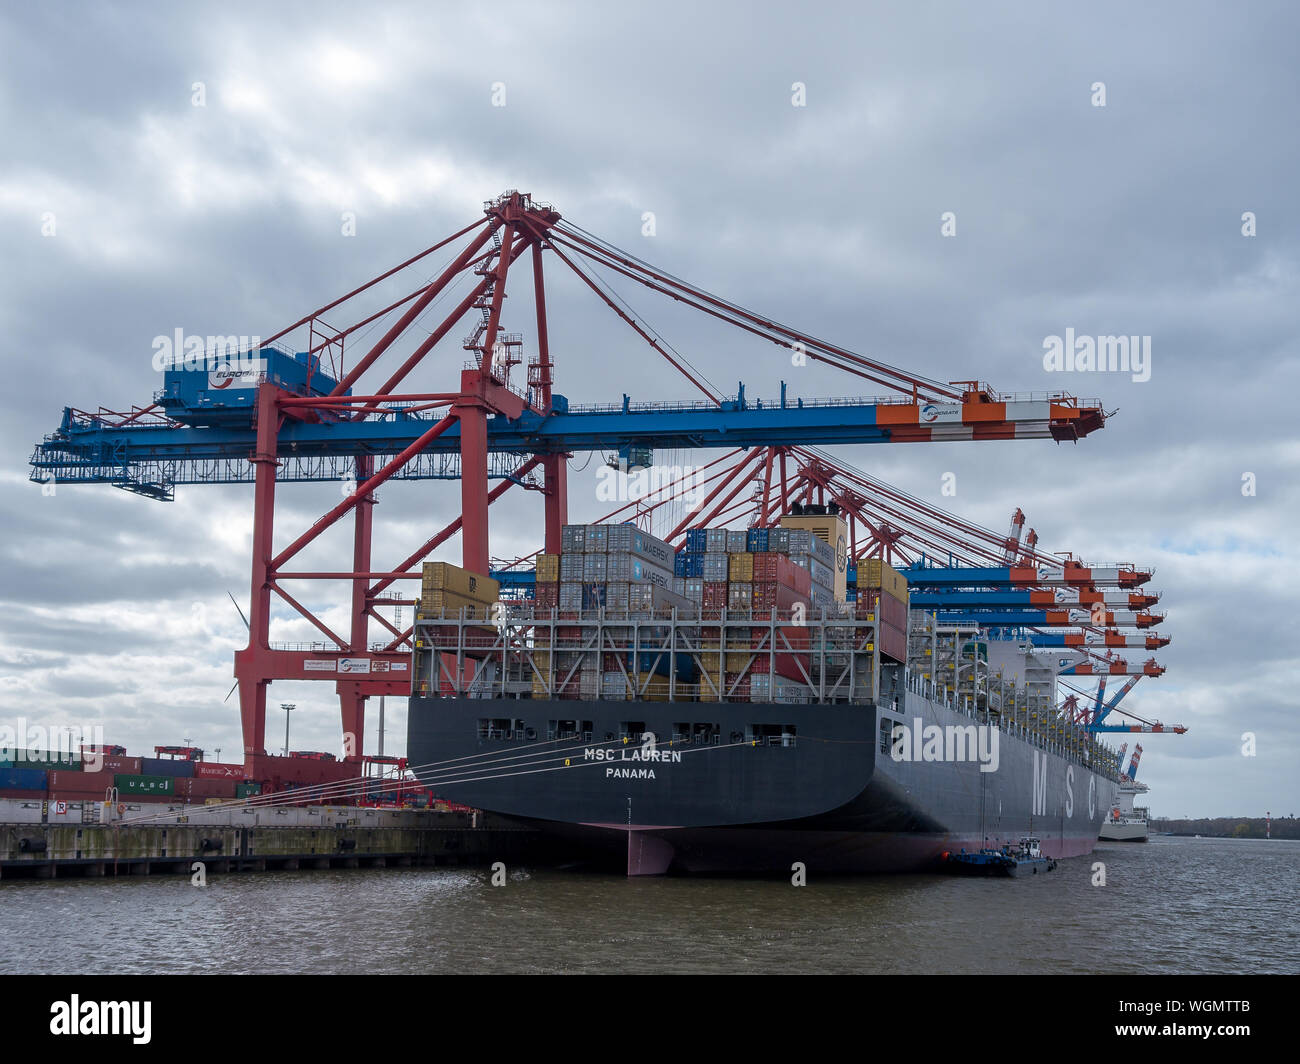 Hamburg, Deutschland - 22 April 2016: Blick auf verankert Containerschiff MSC Lauren an Containerterminals Eurogate bei Tageslicht in Hamburg, Deutschland. Stockfoto